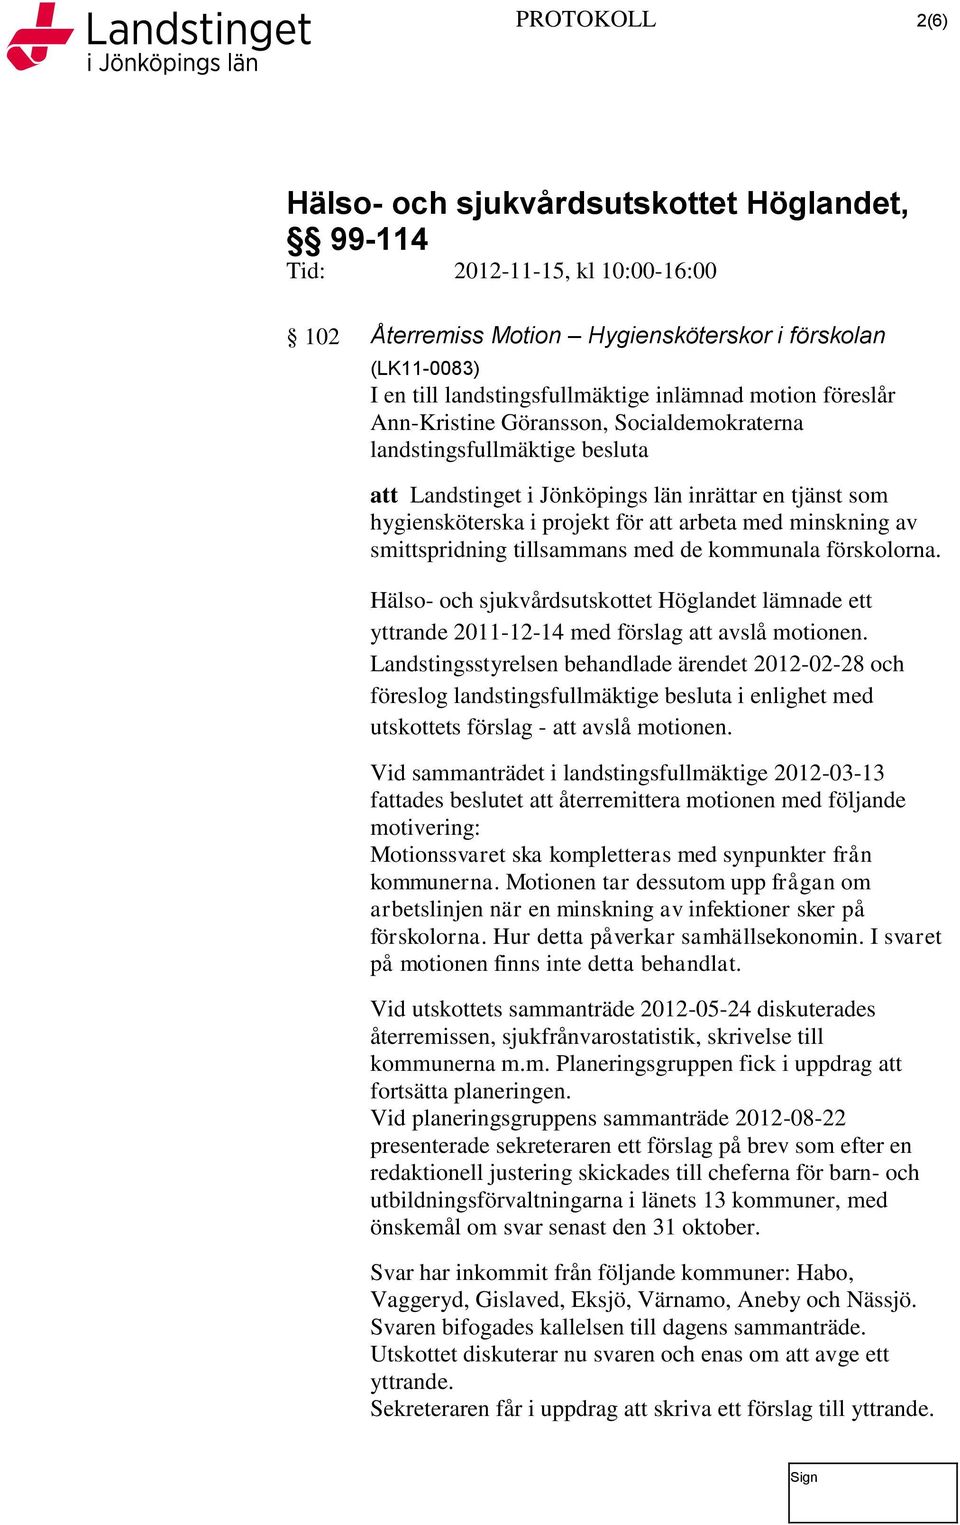 Hälso- och sjukvårdsutskottet Höglandet lämnade ett yttrande 2011-12-14 med förslag att avslå motionen.